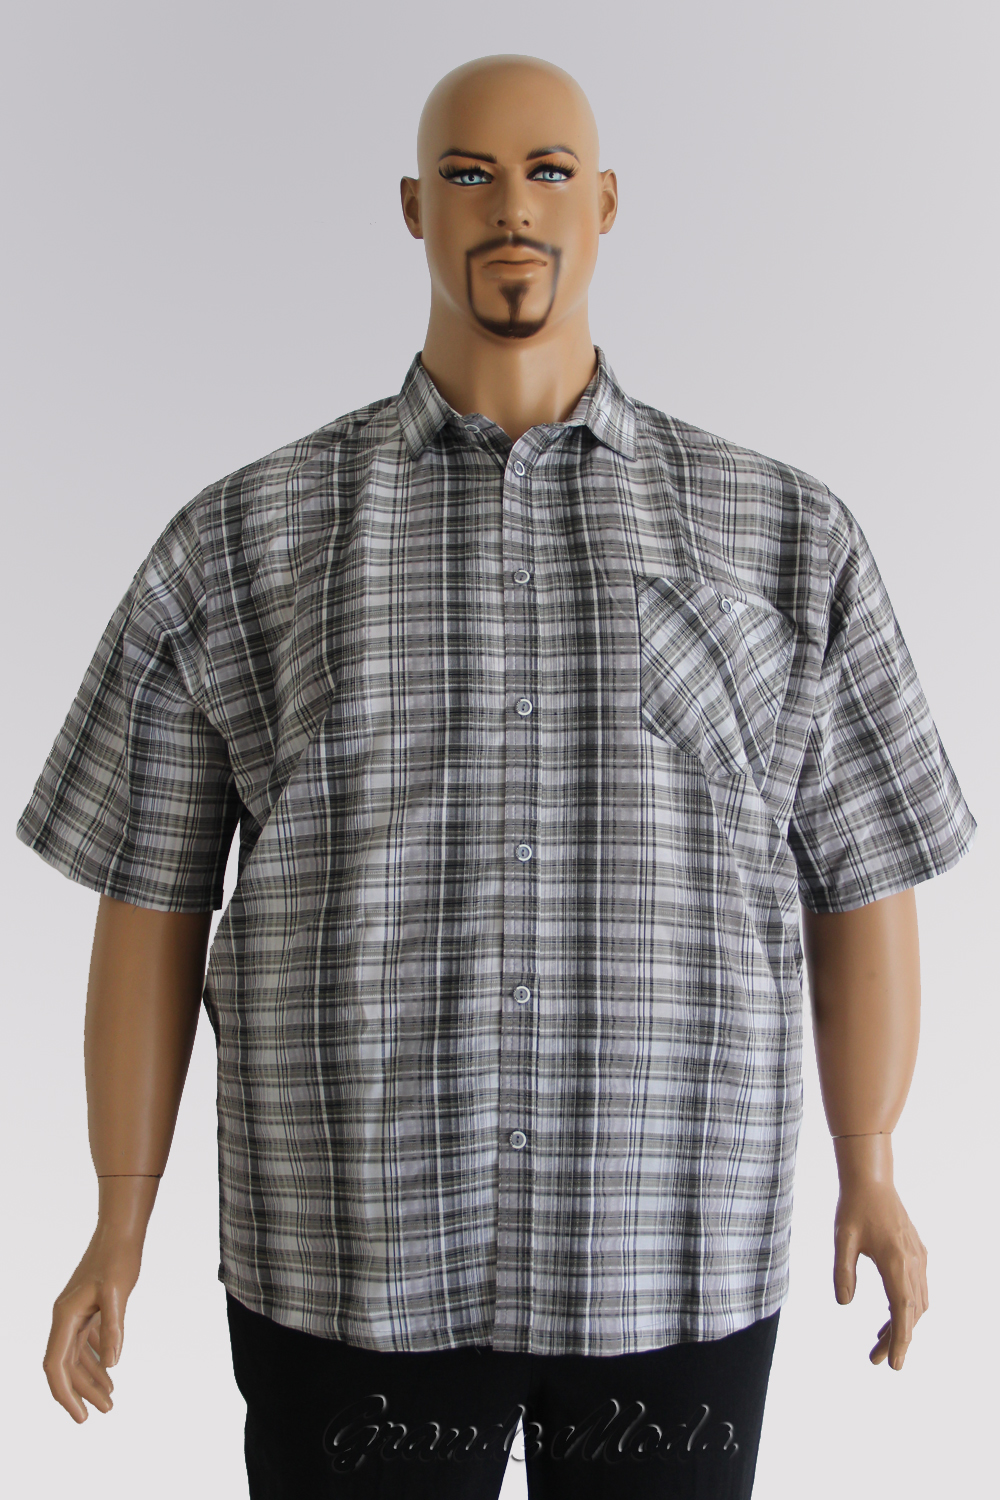 Мужские большие размеры новосибирск. Полный мужчина в рубашке. Мужские рубашки больших размеров. Рубашки для больших мужчин. Крупный мужчина в рубашке.